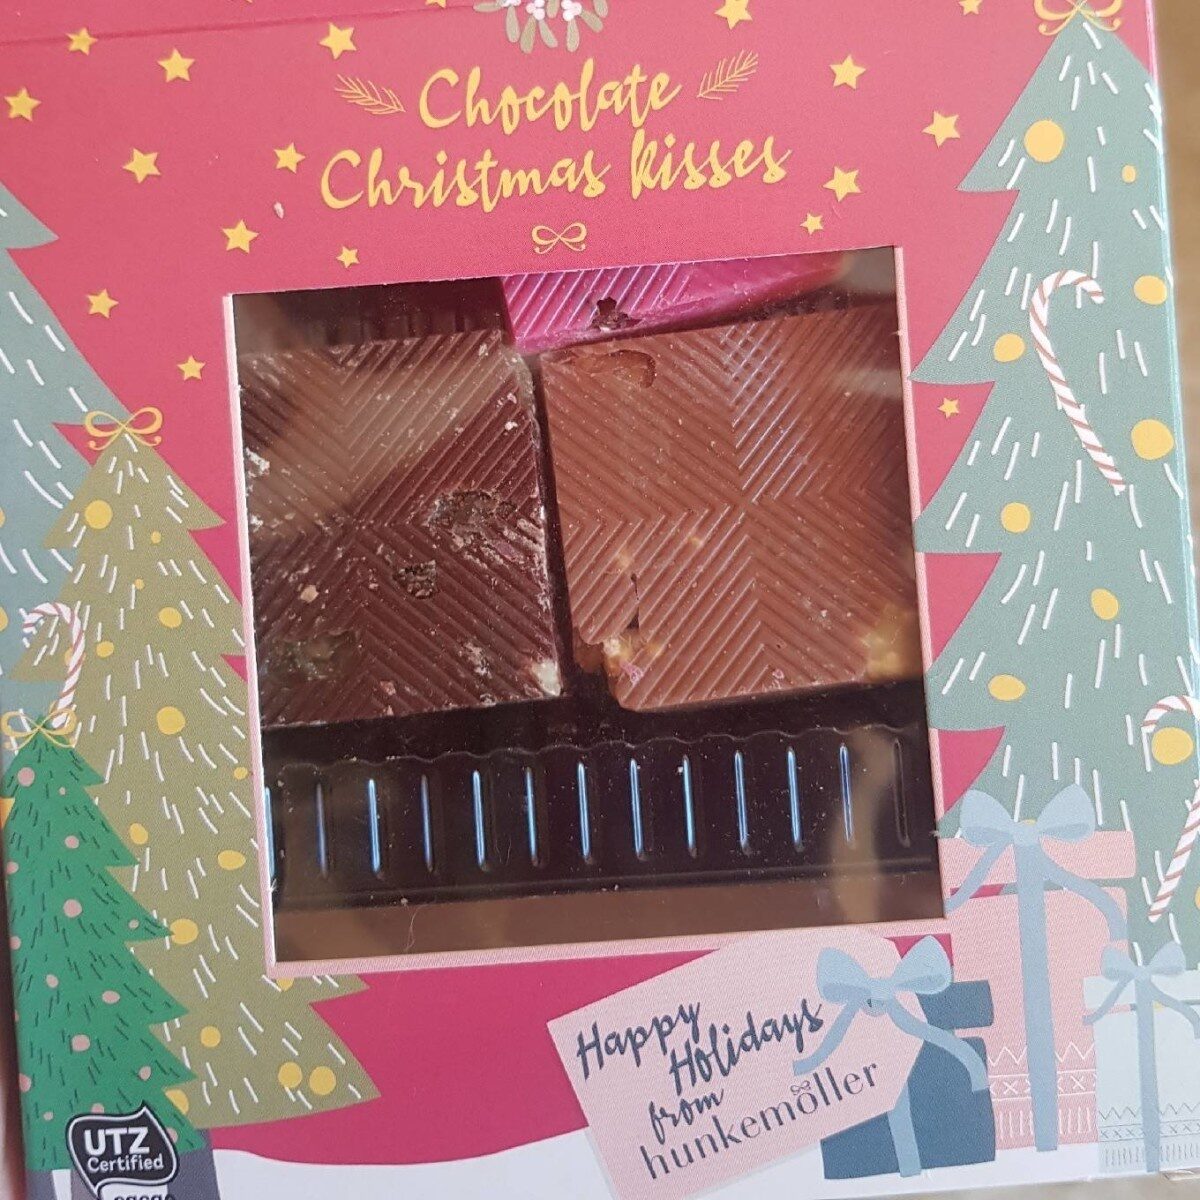 Chocolate christmas kisses hunkemoller - Producto